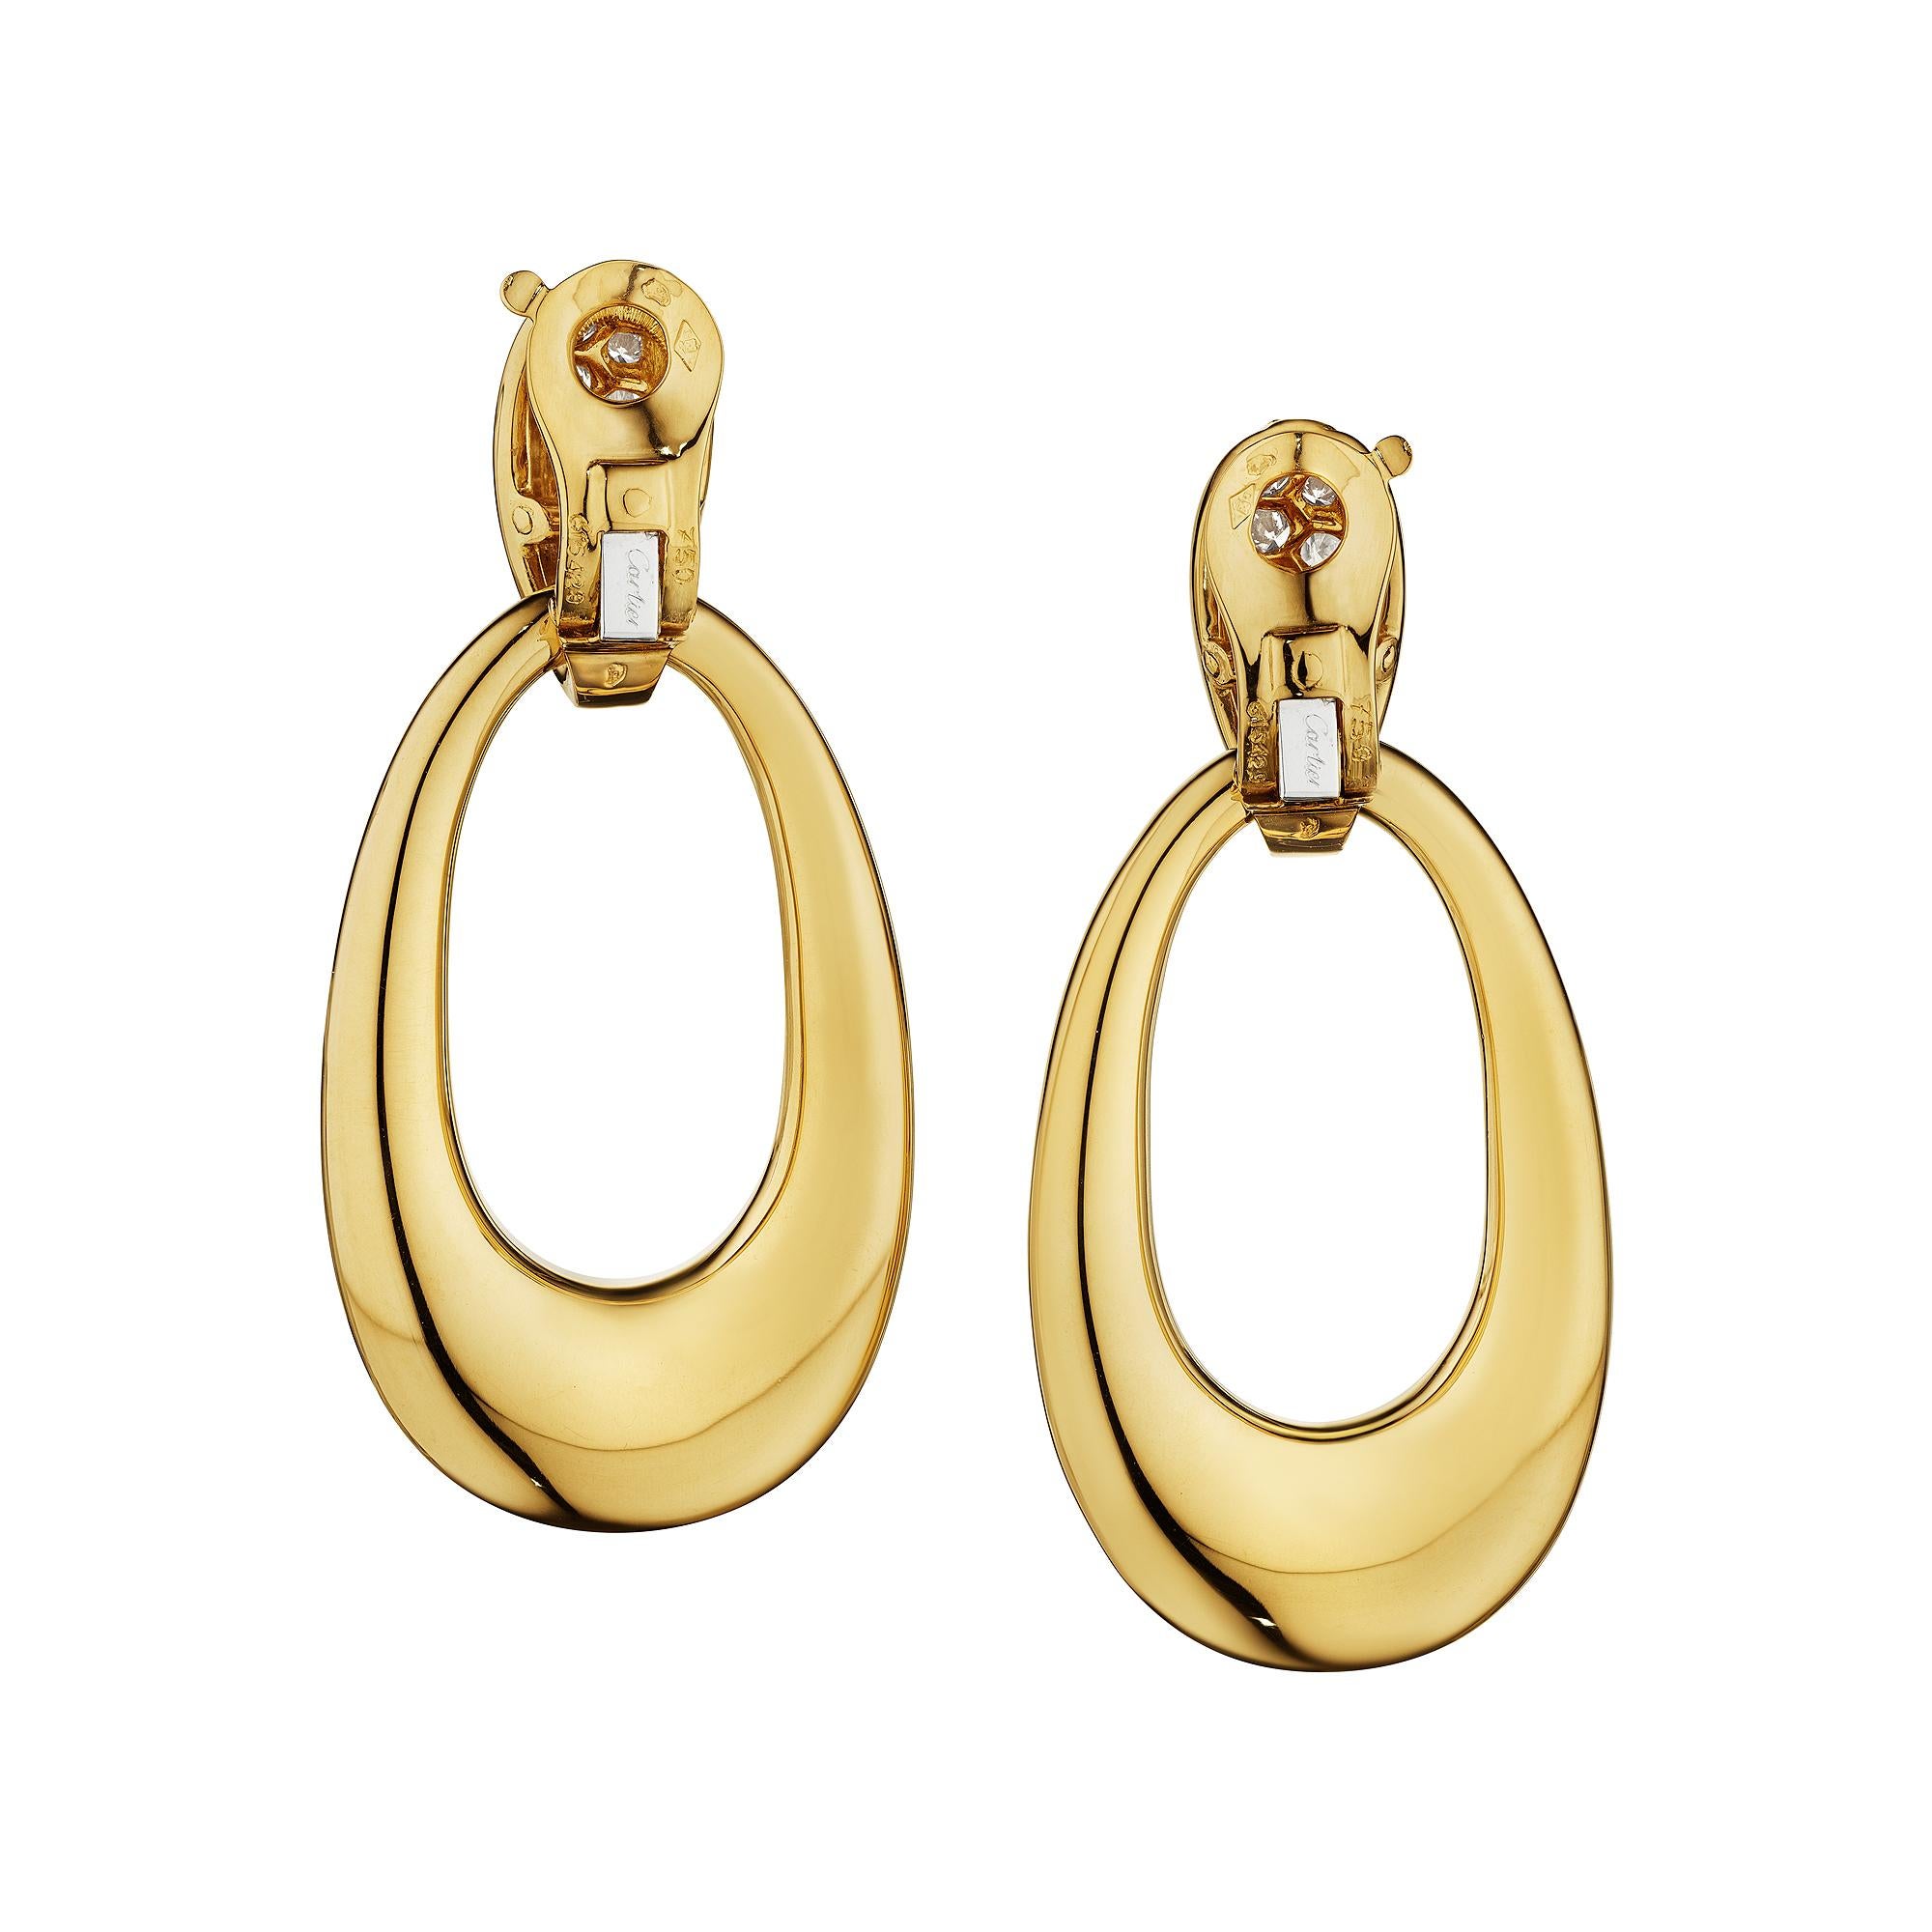 Klopf, klopf, wer ist da?  Es ist ein exquisites Paar Cartier Paris Georges L'Enfant Clip Türklopfer Diamant Gelbgold Vintage-Ohrringe.  Die großen ovalen Loops aus 18 Karat Gelbgold, die an kleinen diamantbesetzten Reifchen schwingen, können